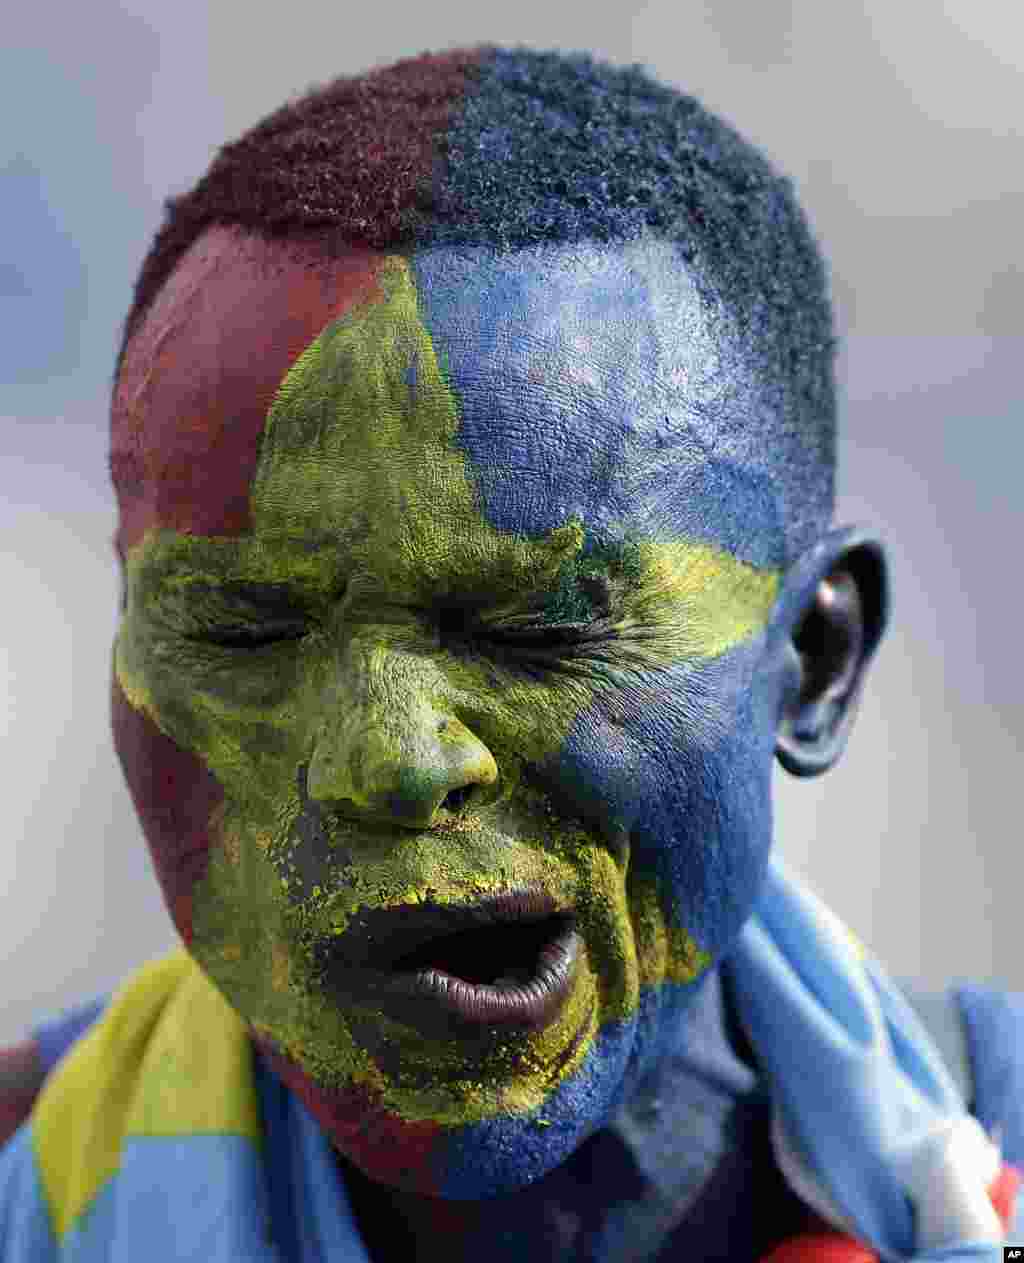 يک هوادار فوتبال اهل جمهوری دمکراتيک کنگو صورت خود را با رنگ های پرچم کشورش آرايش کرده است.